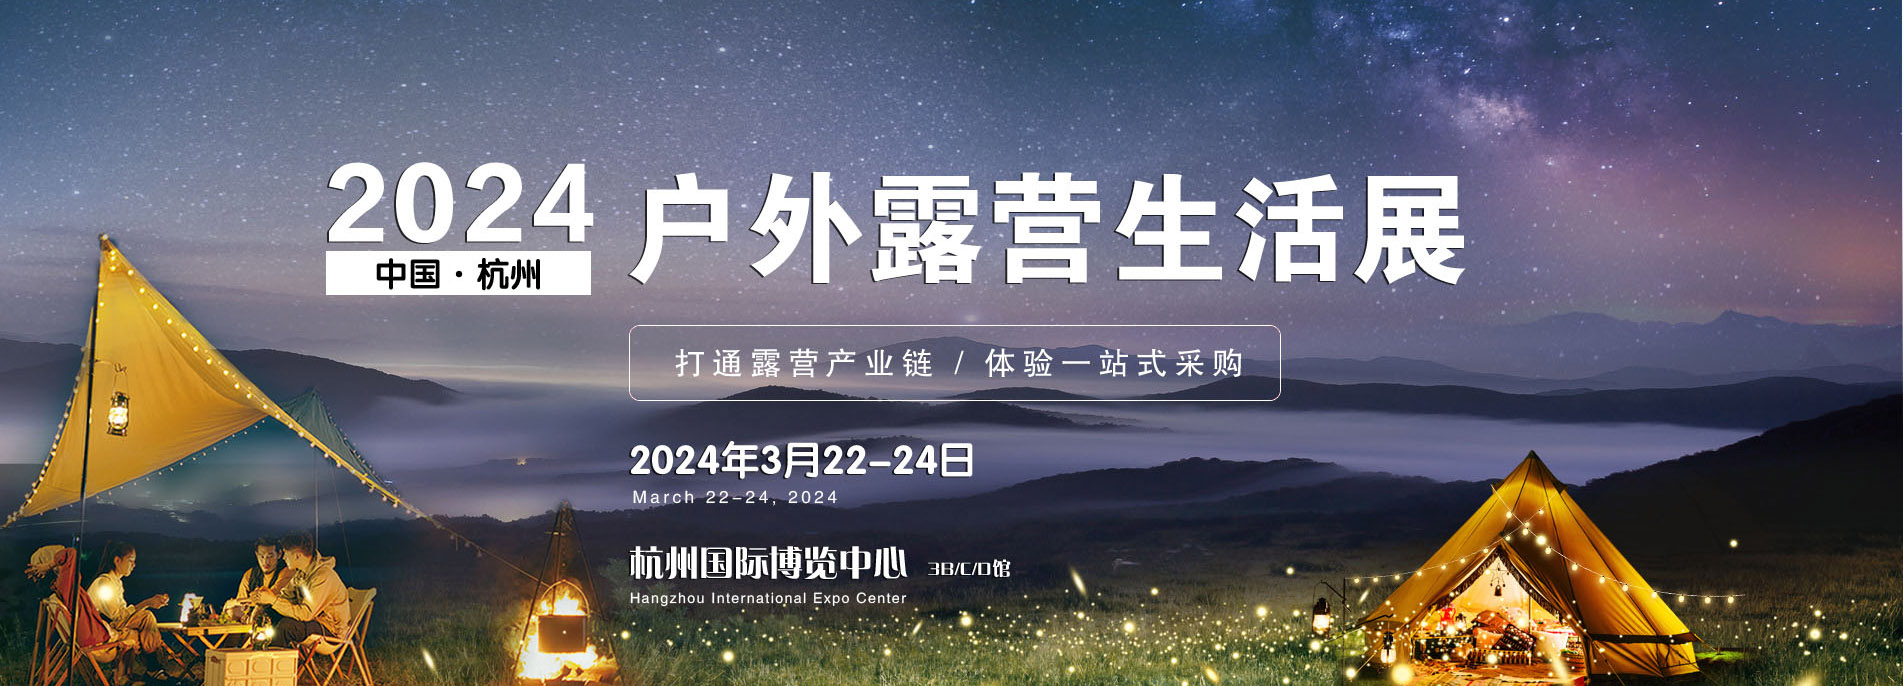 2024年中国(杭州)户外露营生活展